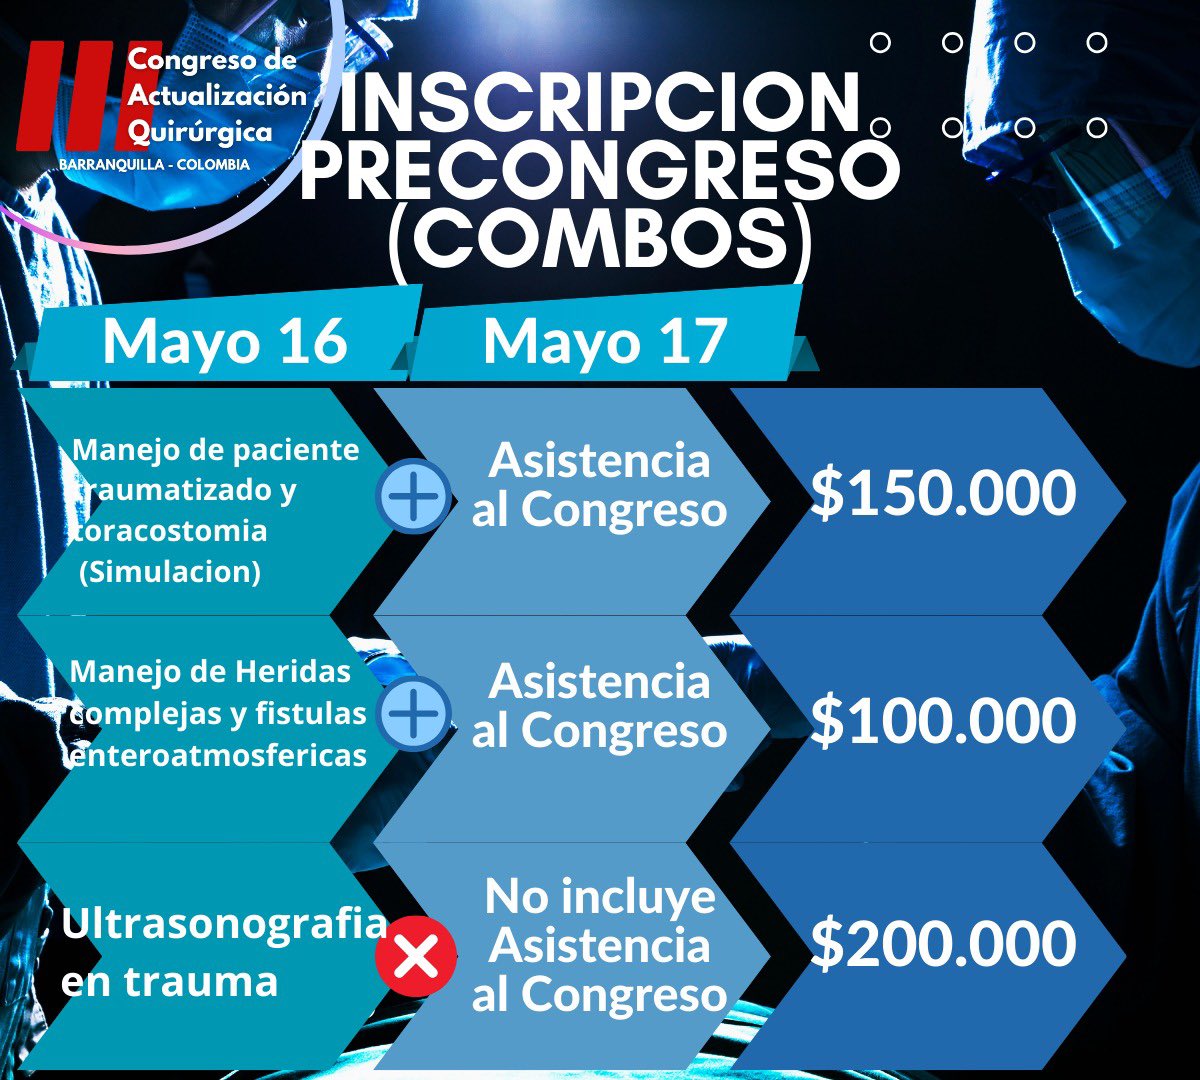 SAVE THE DATE! No te pierdas nuestro #IIICongresoDeActualizacionQuirurgica los días 16 y 17 de mayo! Con el aval de @ascolcirugia y el apoyo de @Convatec! #SoMe4Surgery